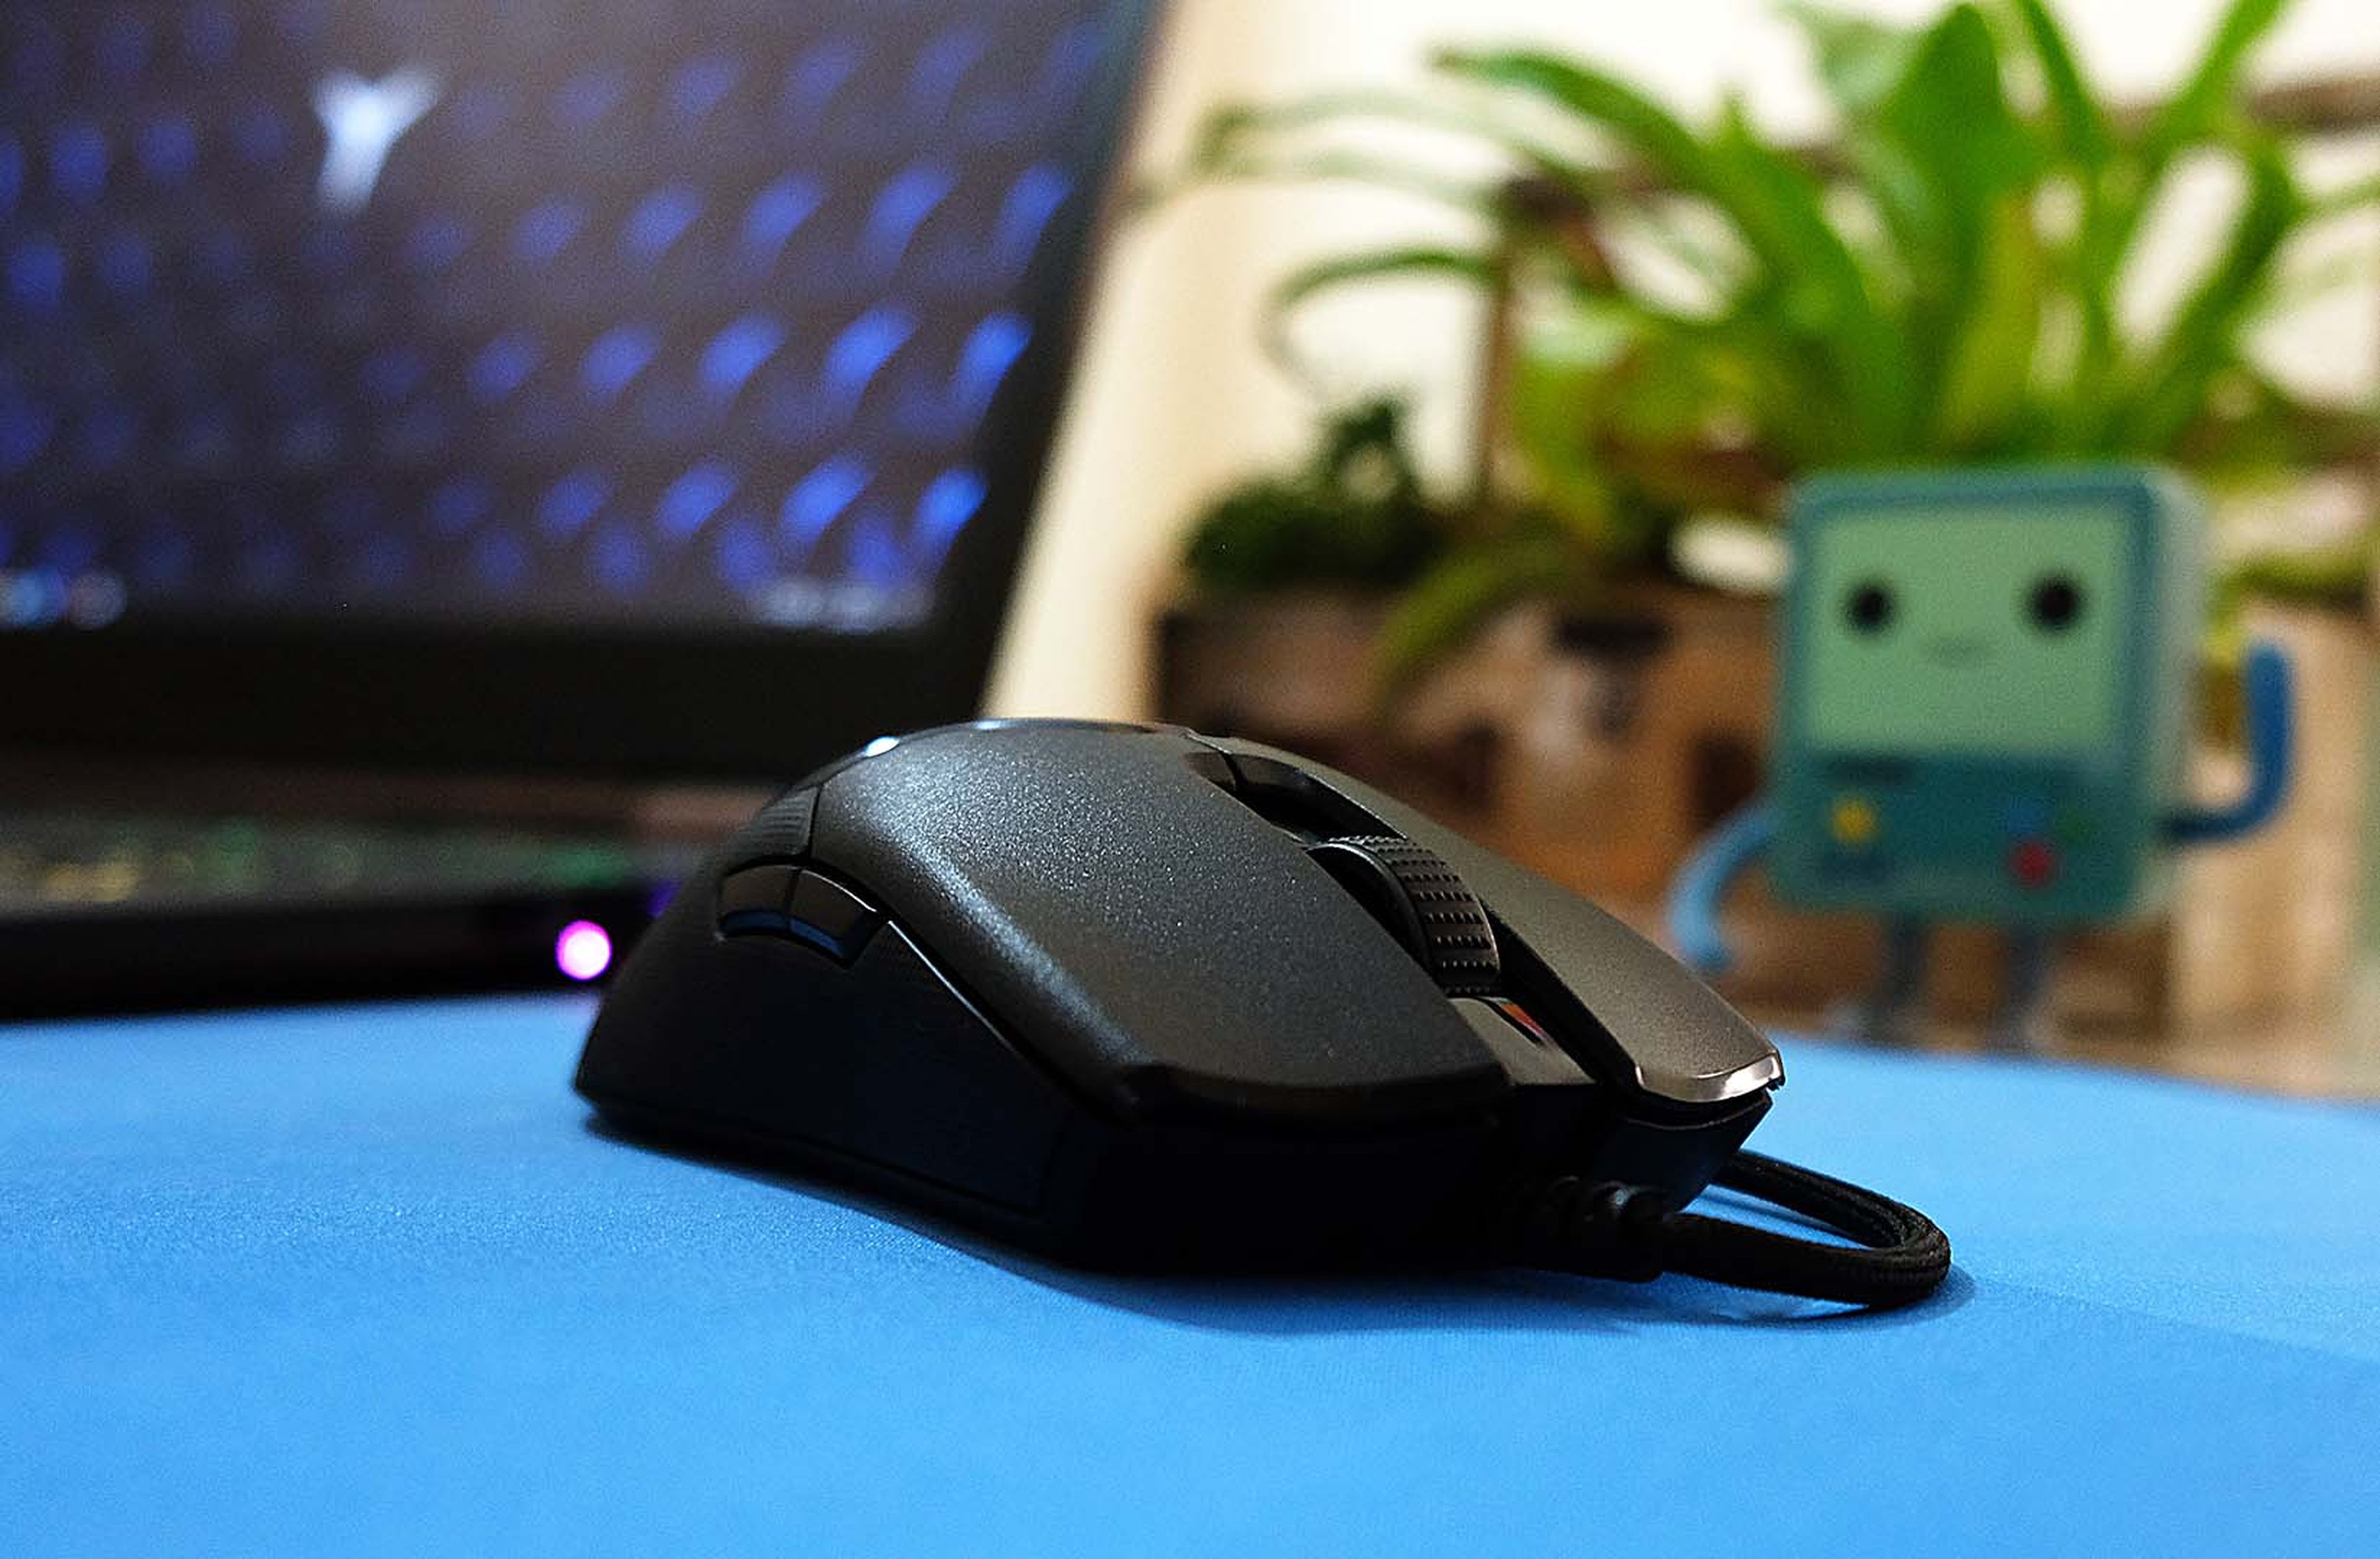 Este es el ratón para gaming más ligero que he probado en mi vida